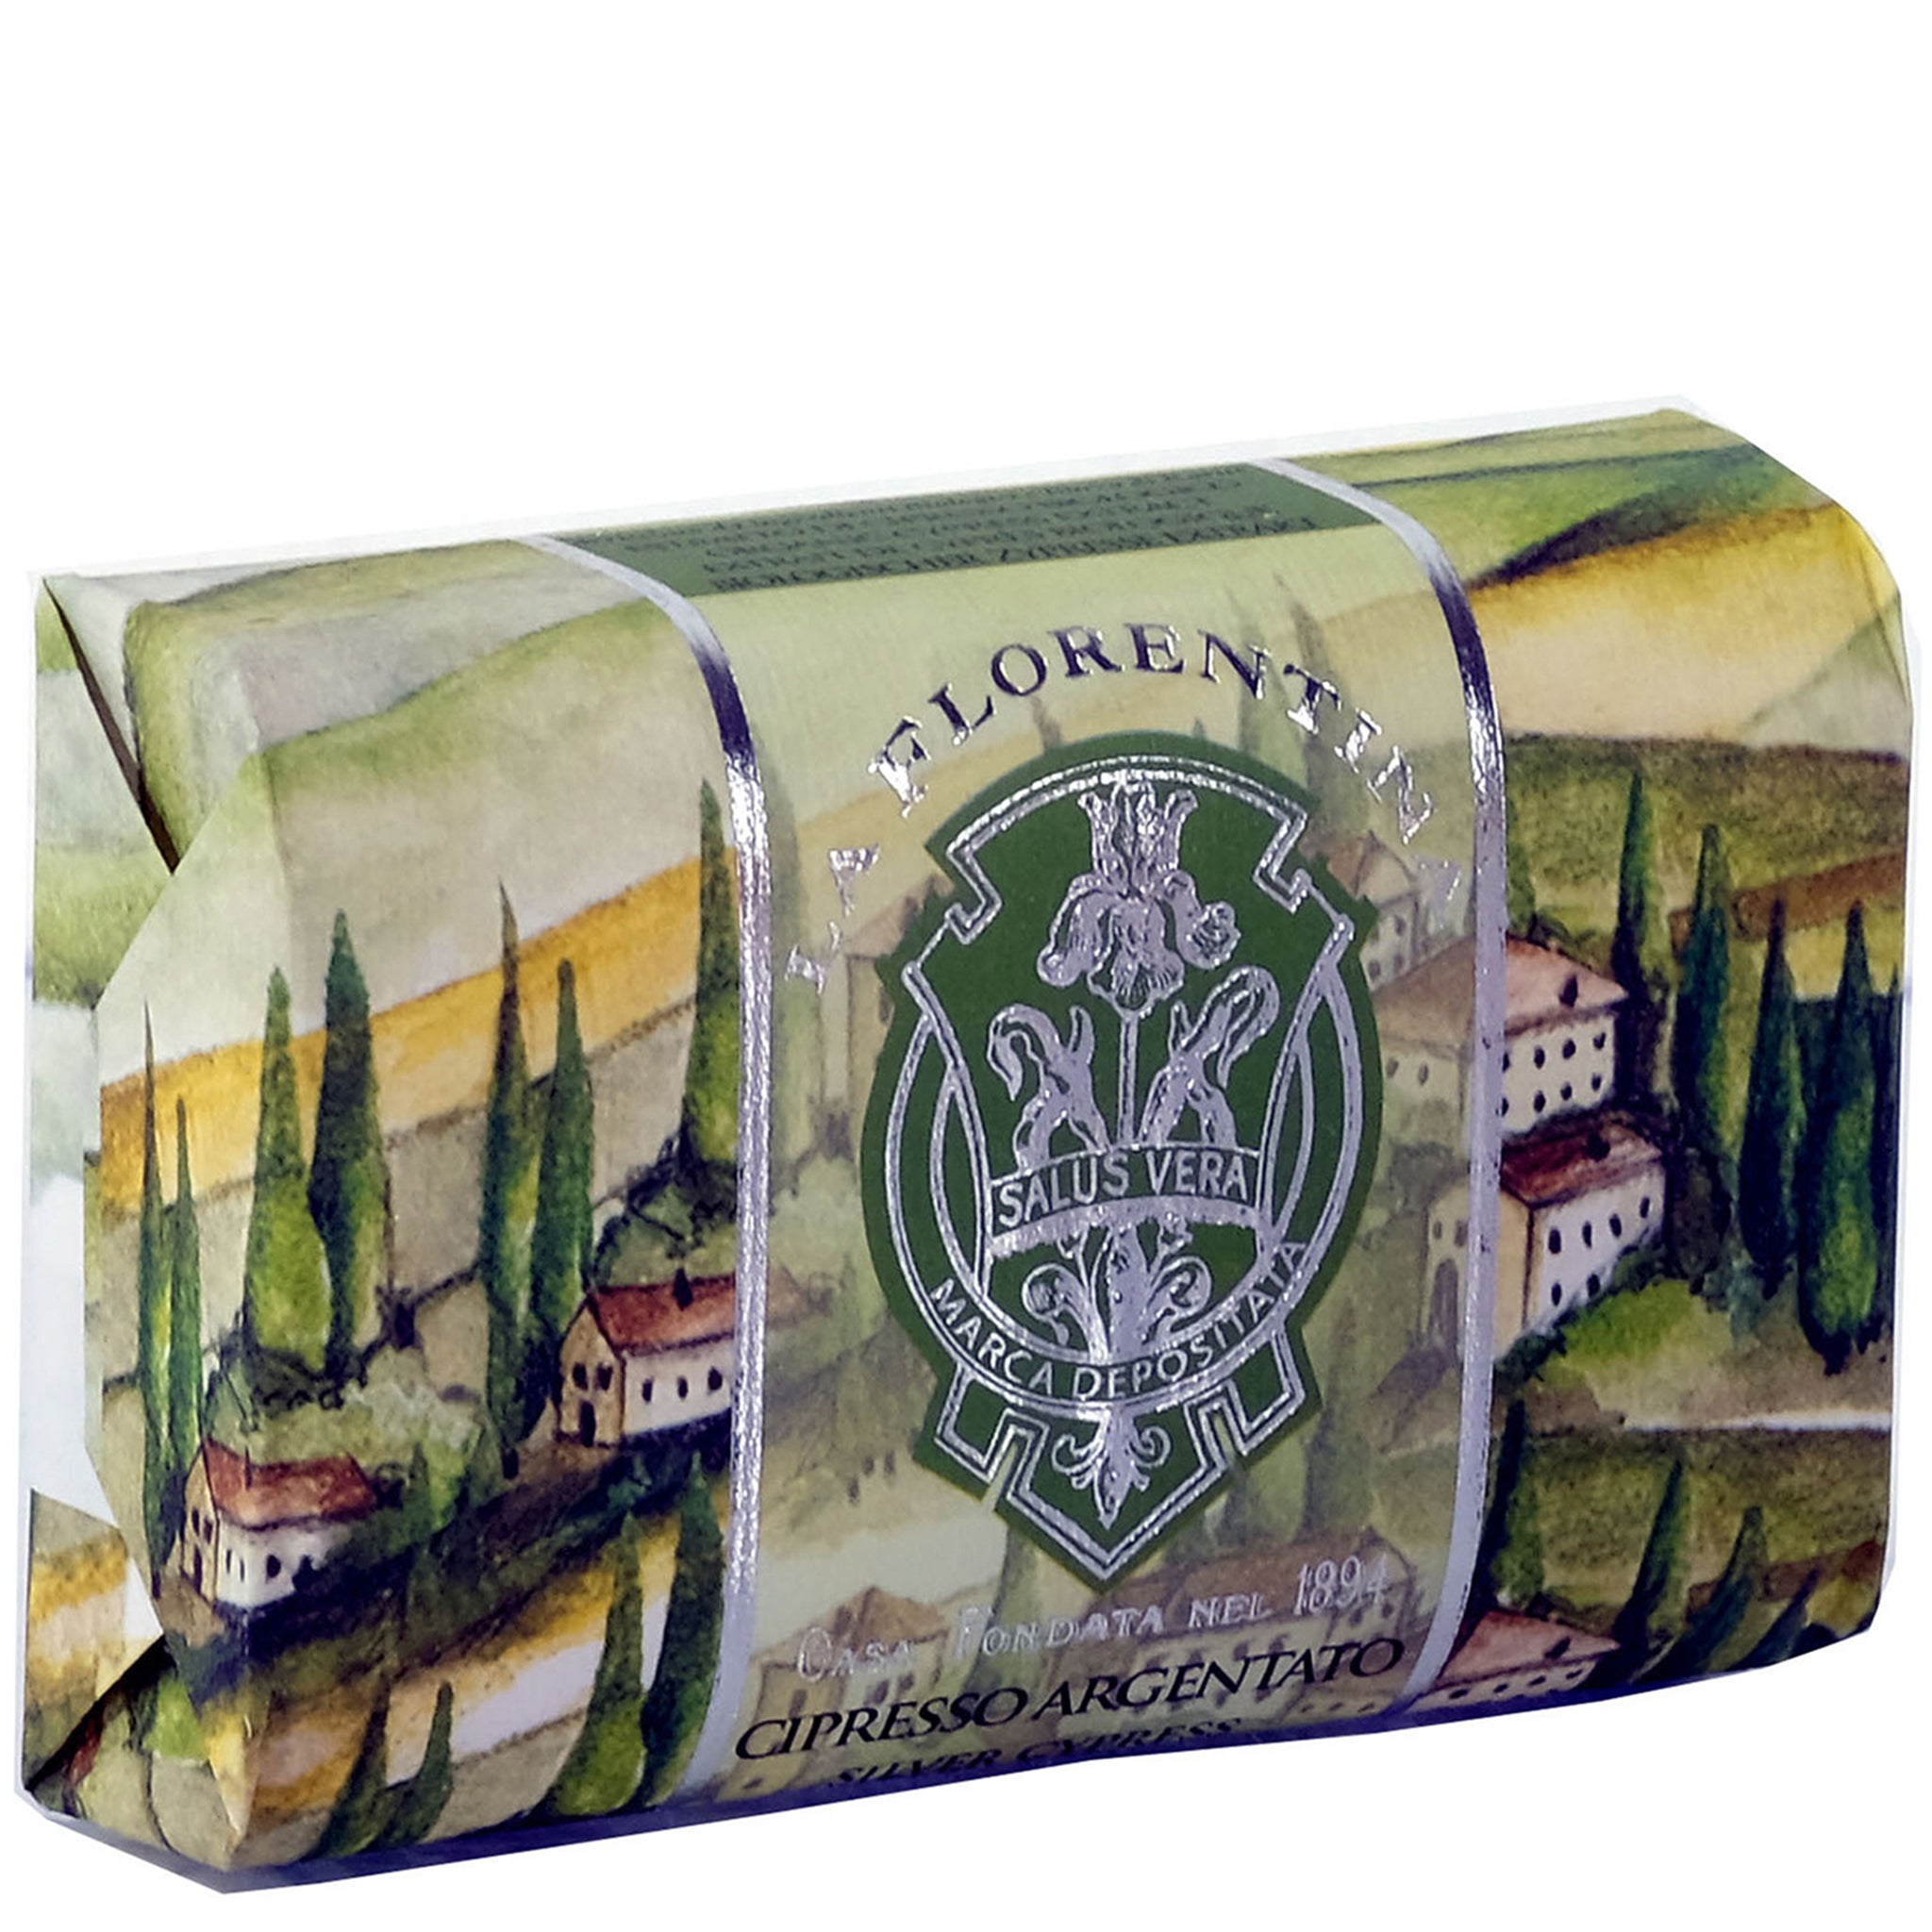 La Florentina Silver Cypress 200g Bar Soap